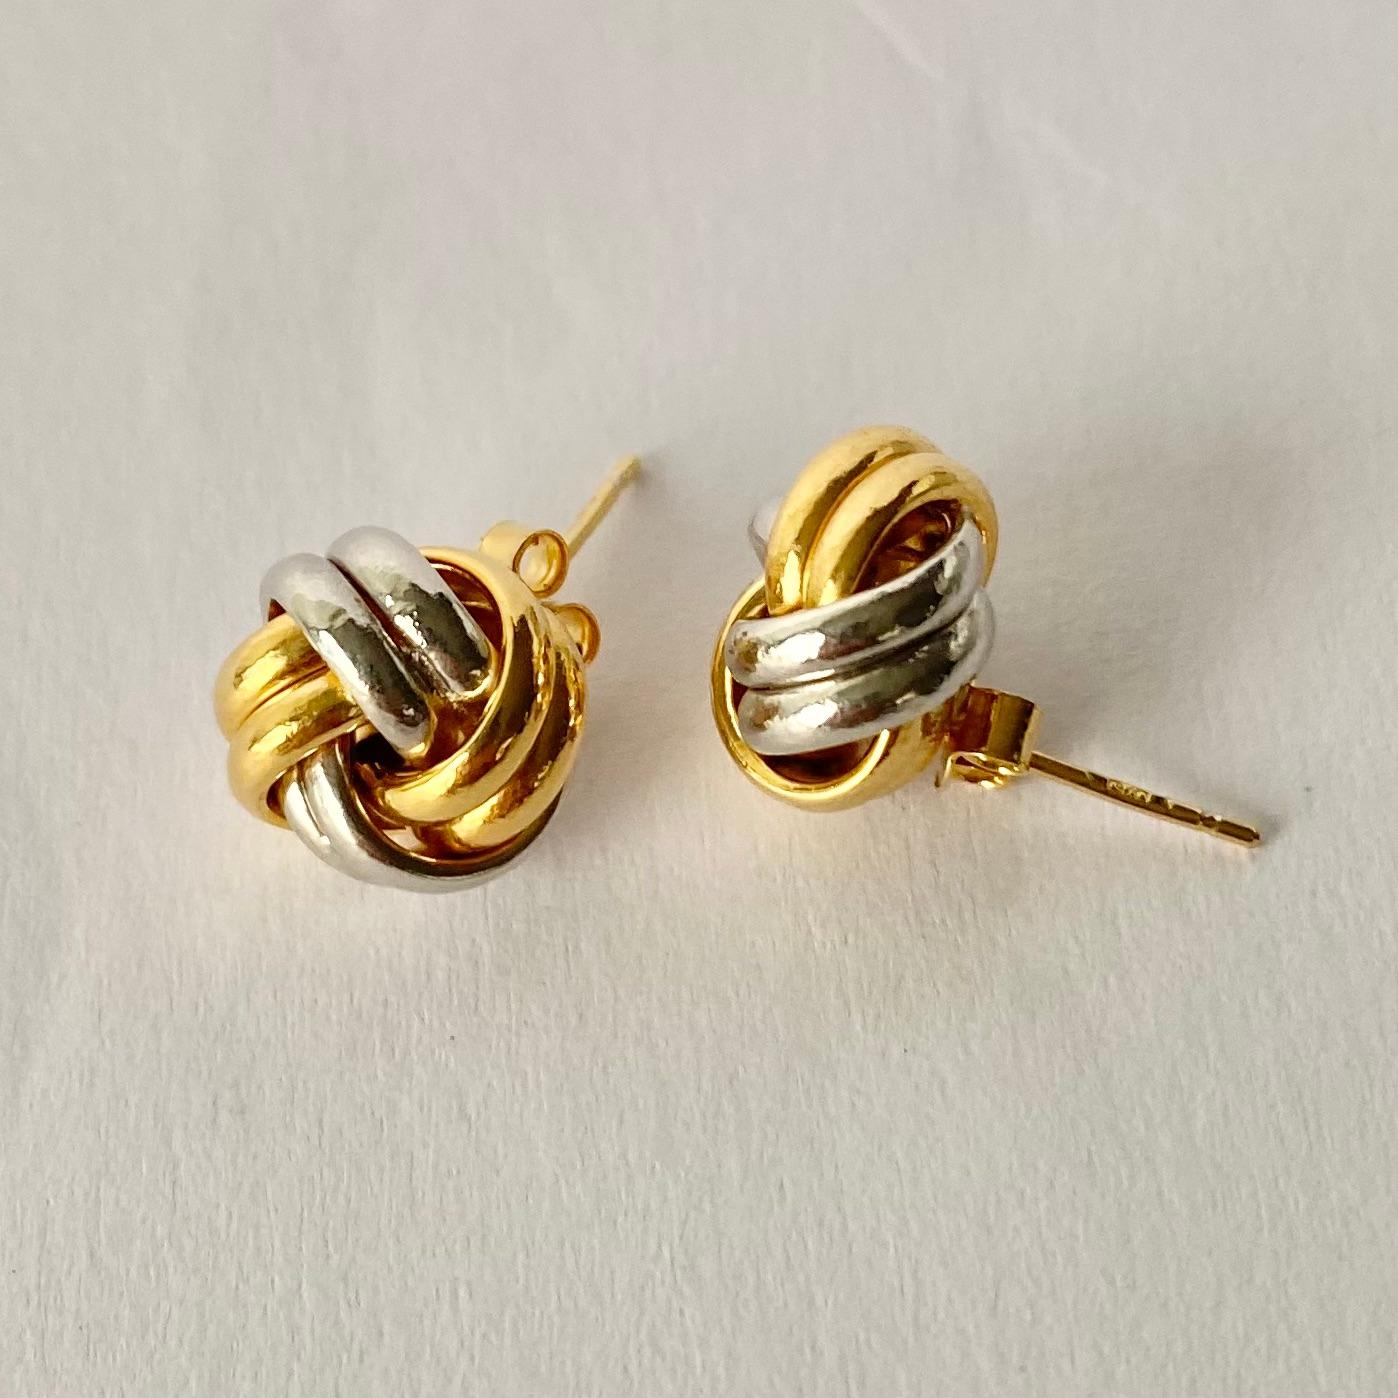 9 carat gold earrings